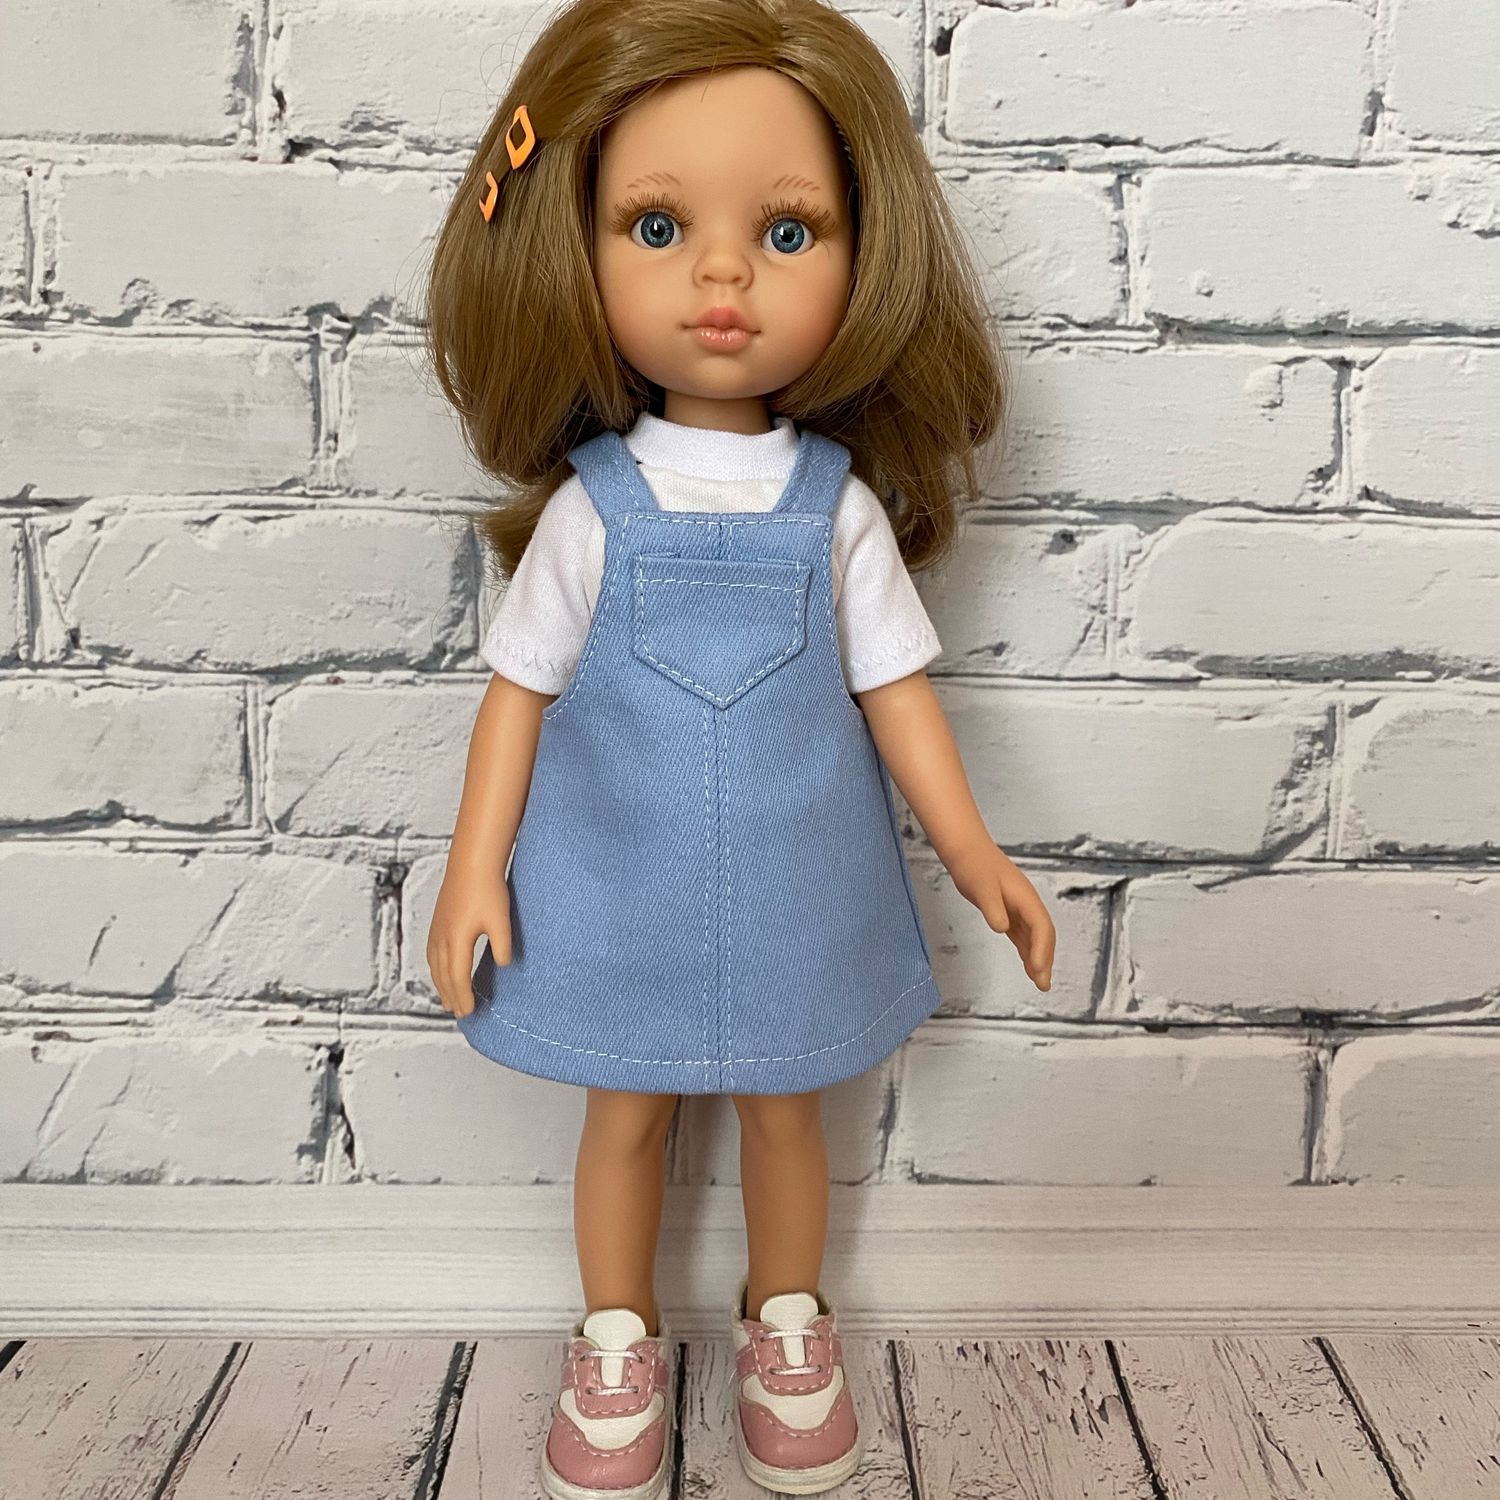 Джинсовый сарафан для кукол Паола Рейна купить в интернет-магазине ЯрмаркаМастеров по цене 350 ₽ – SRLHERU